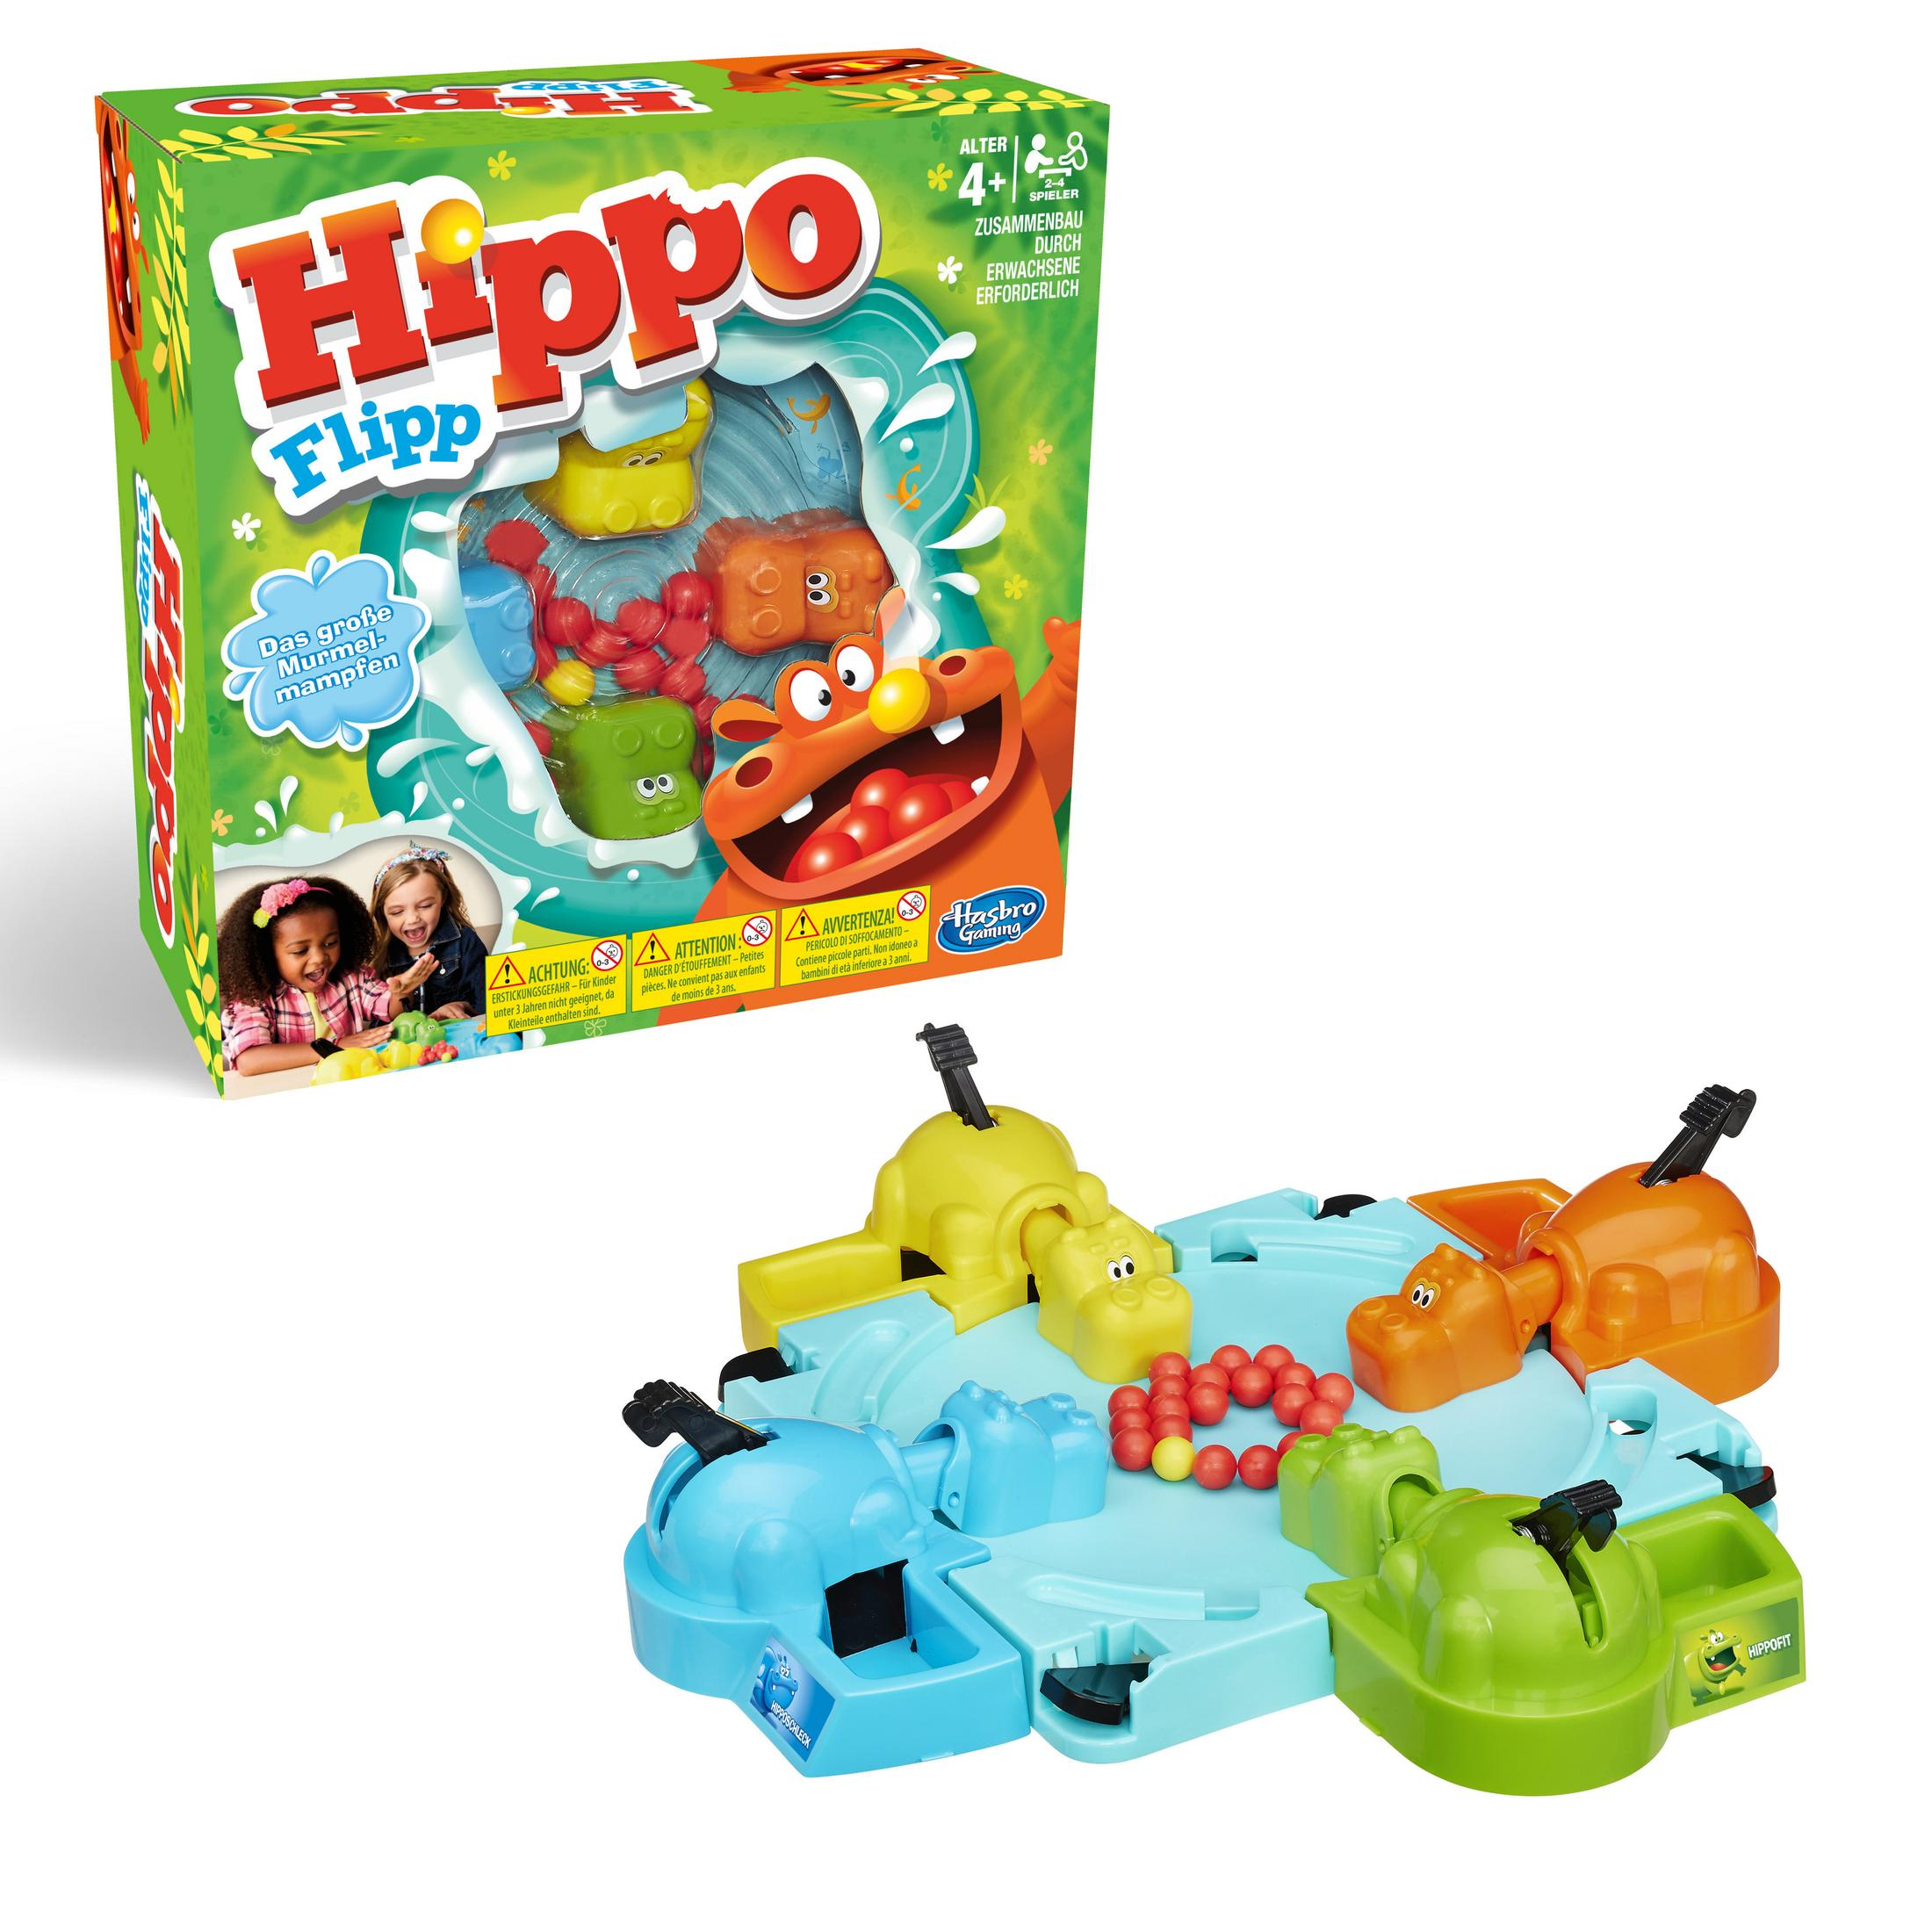 FLIPP HIPPO 98936398 GAMING HASBRO Gesellschaftsspiel